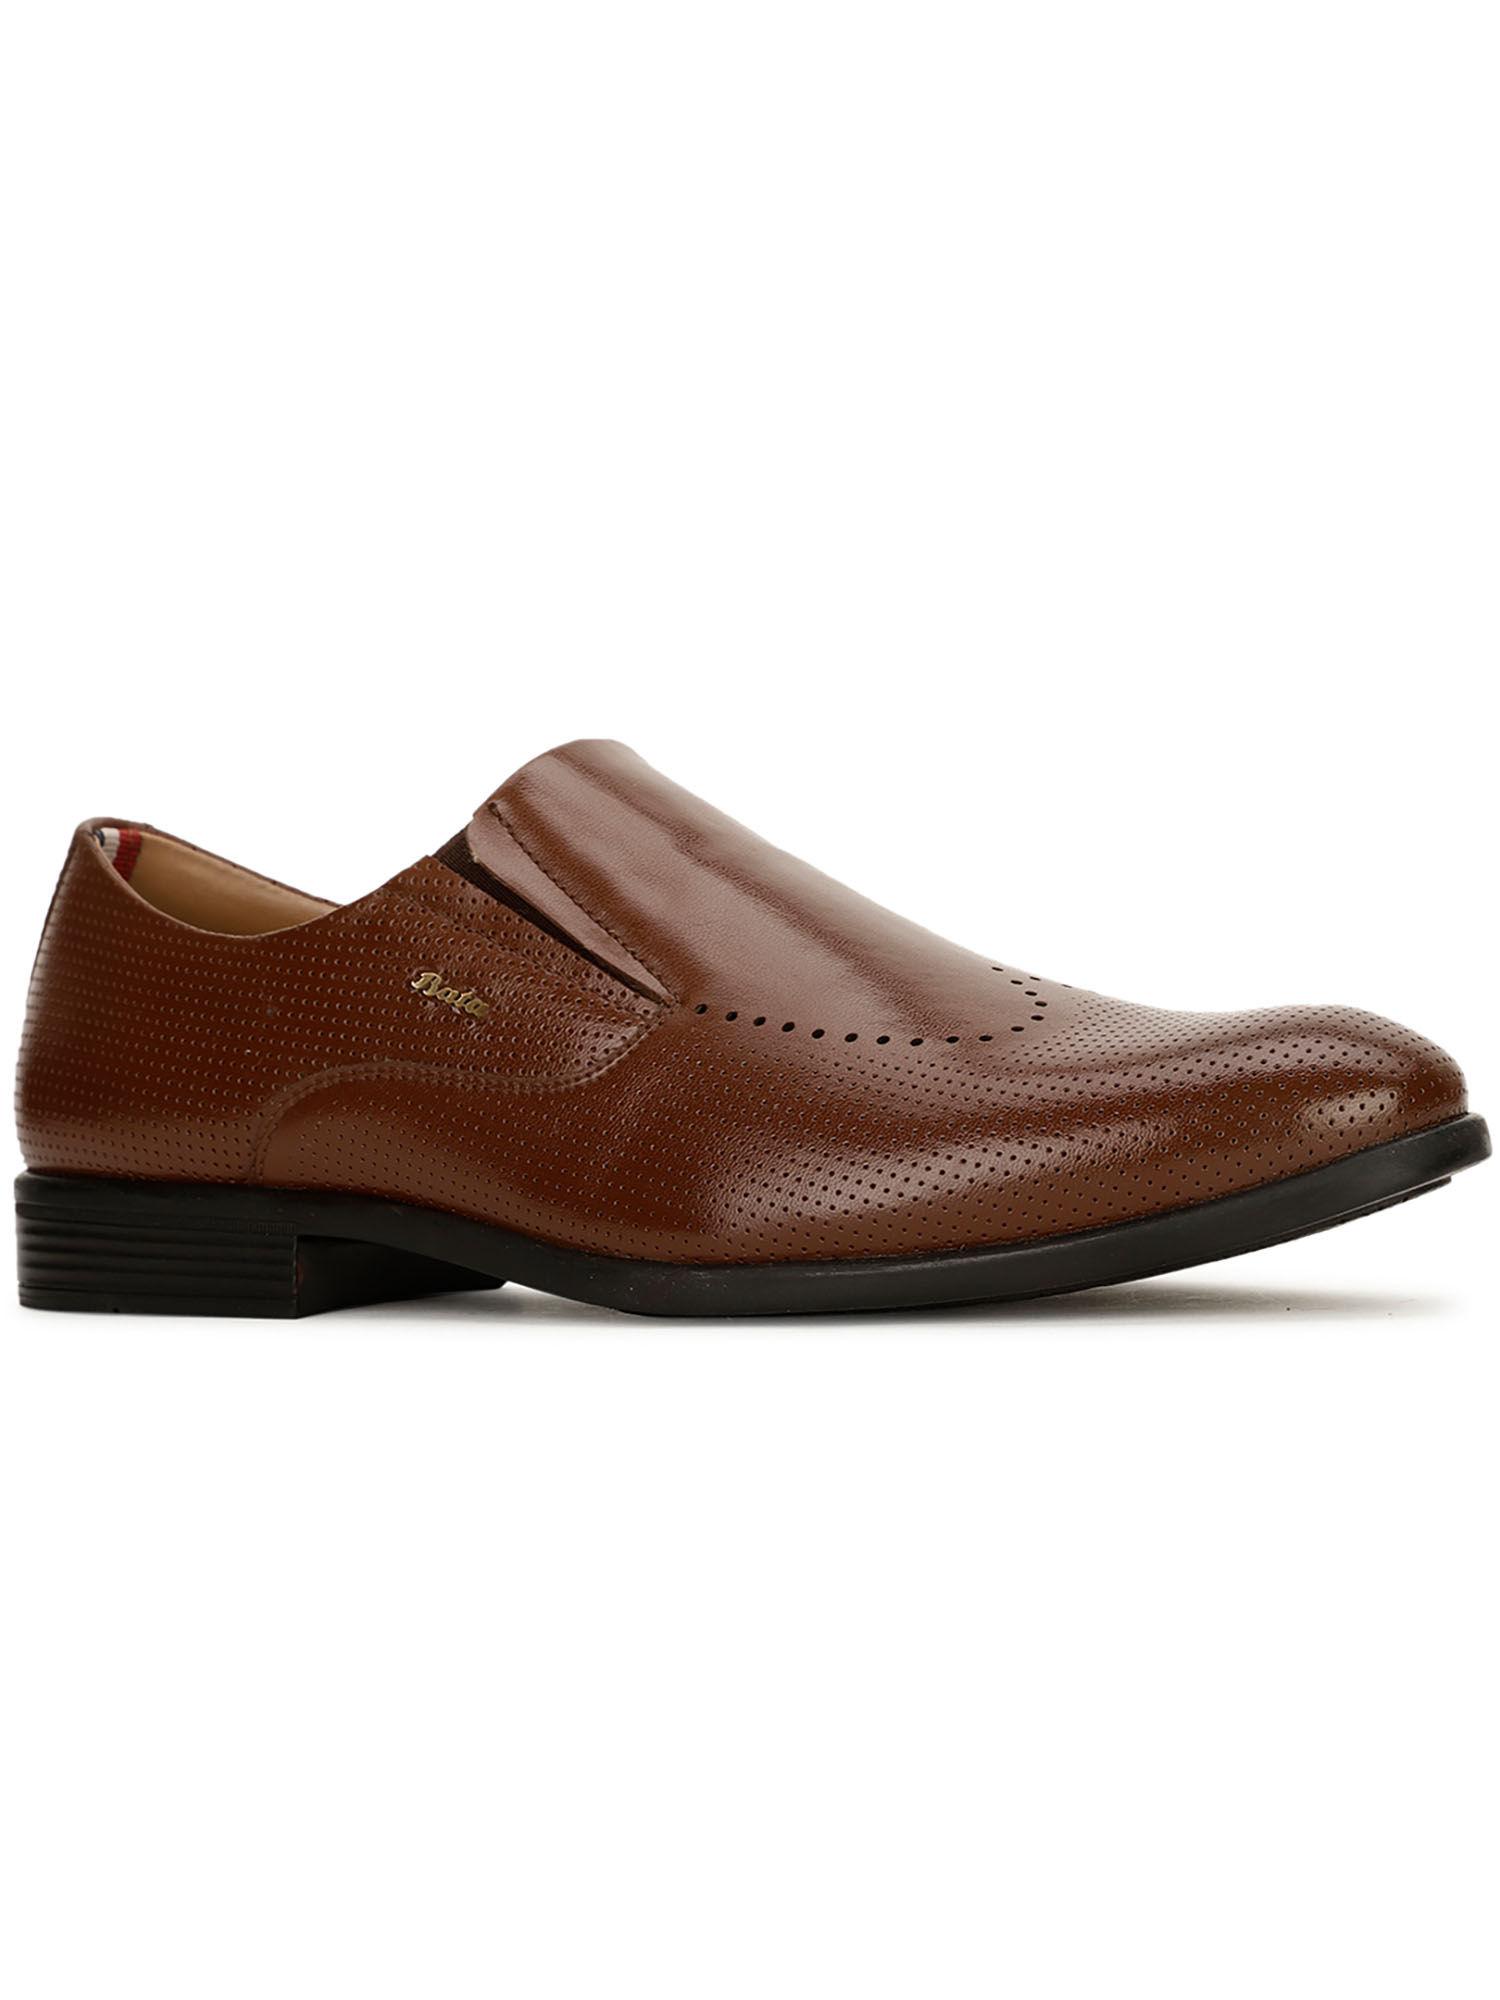 men-brown-slip-on-formal-shoes